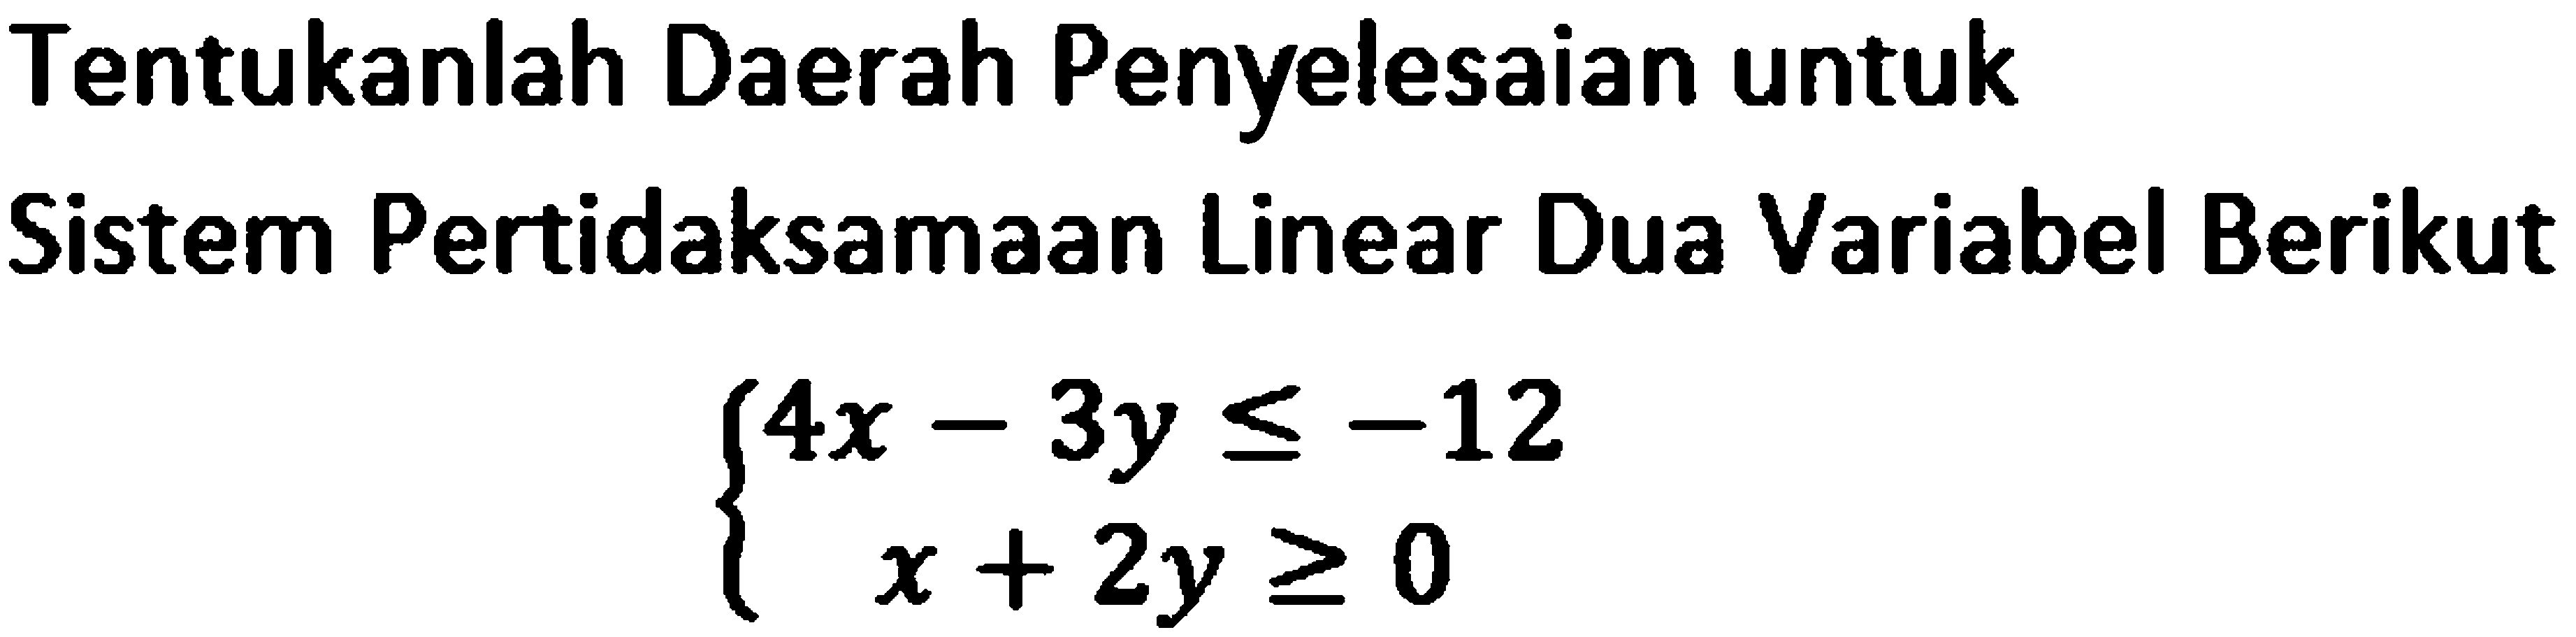 Tentukanlah Daerah Penyelesaian untuk Sistem Pertidaksamaan Linear Dua Variabel Berikut 4x-3y<=-12 x+2y>=0